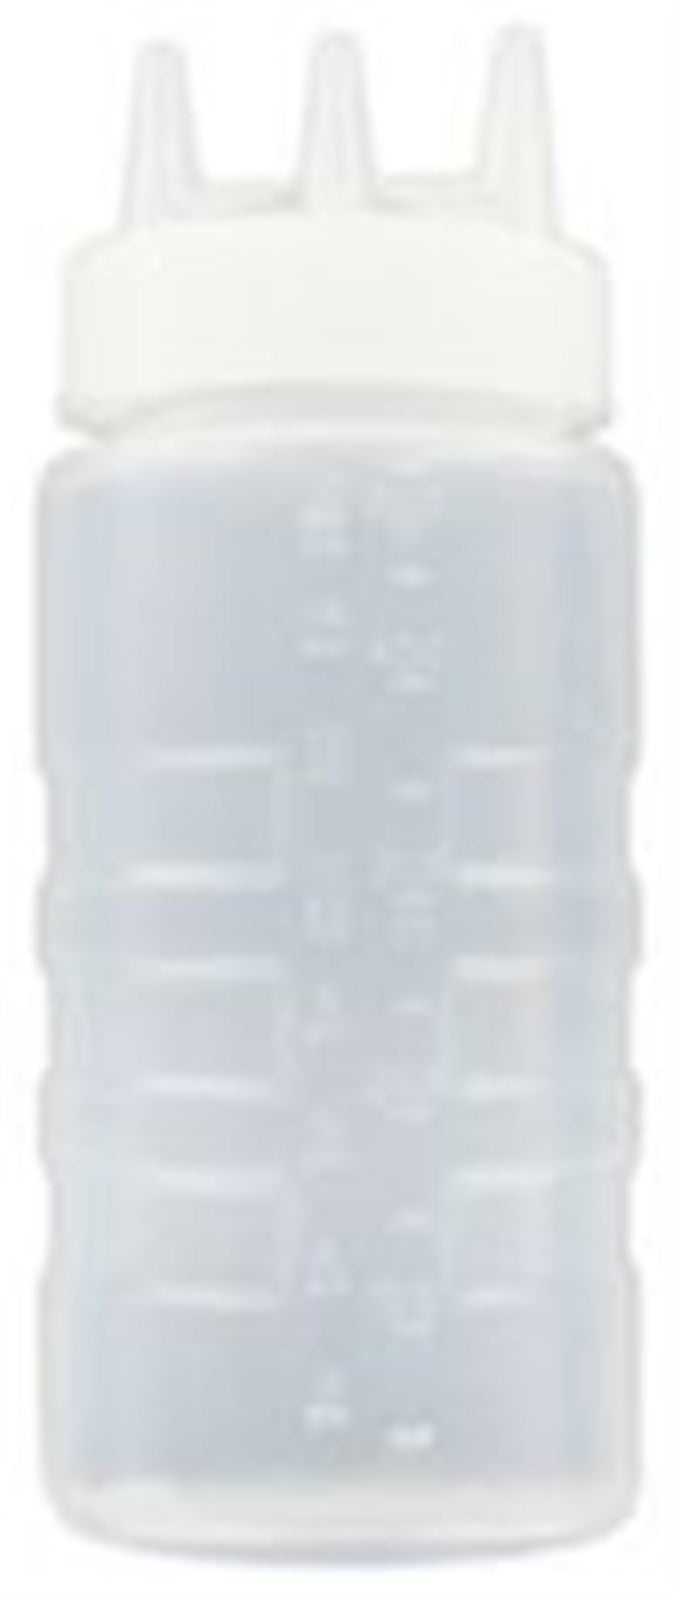 Saucen Dispenser dreifach klar 0.473lt in Transparent präsentiert im Onlineshop von KAQTU Design AG. Barzubehör ist von Vollrath